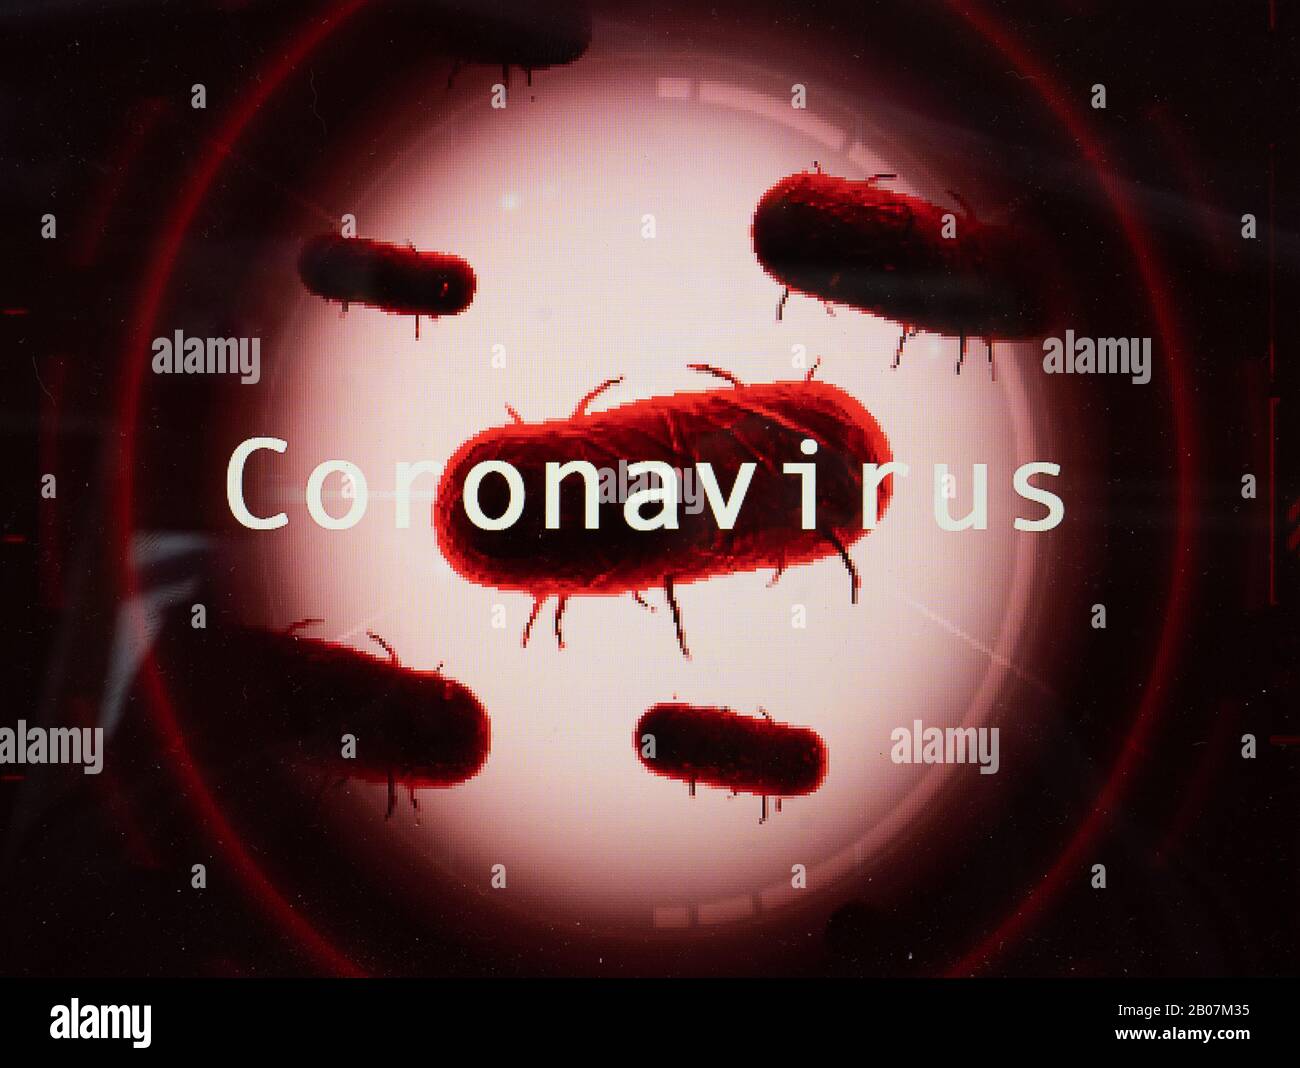 Células médicas, patógenos, Coronavirus a partir de China, una familia de virus que causan enfermedades que van desde el resfriado común hasta enfermedades más graves Foto de stock